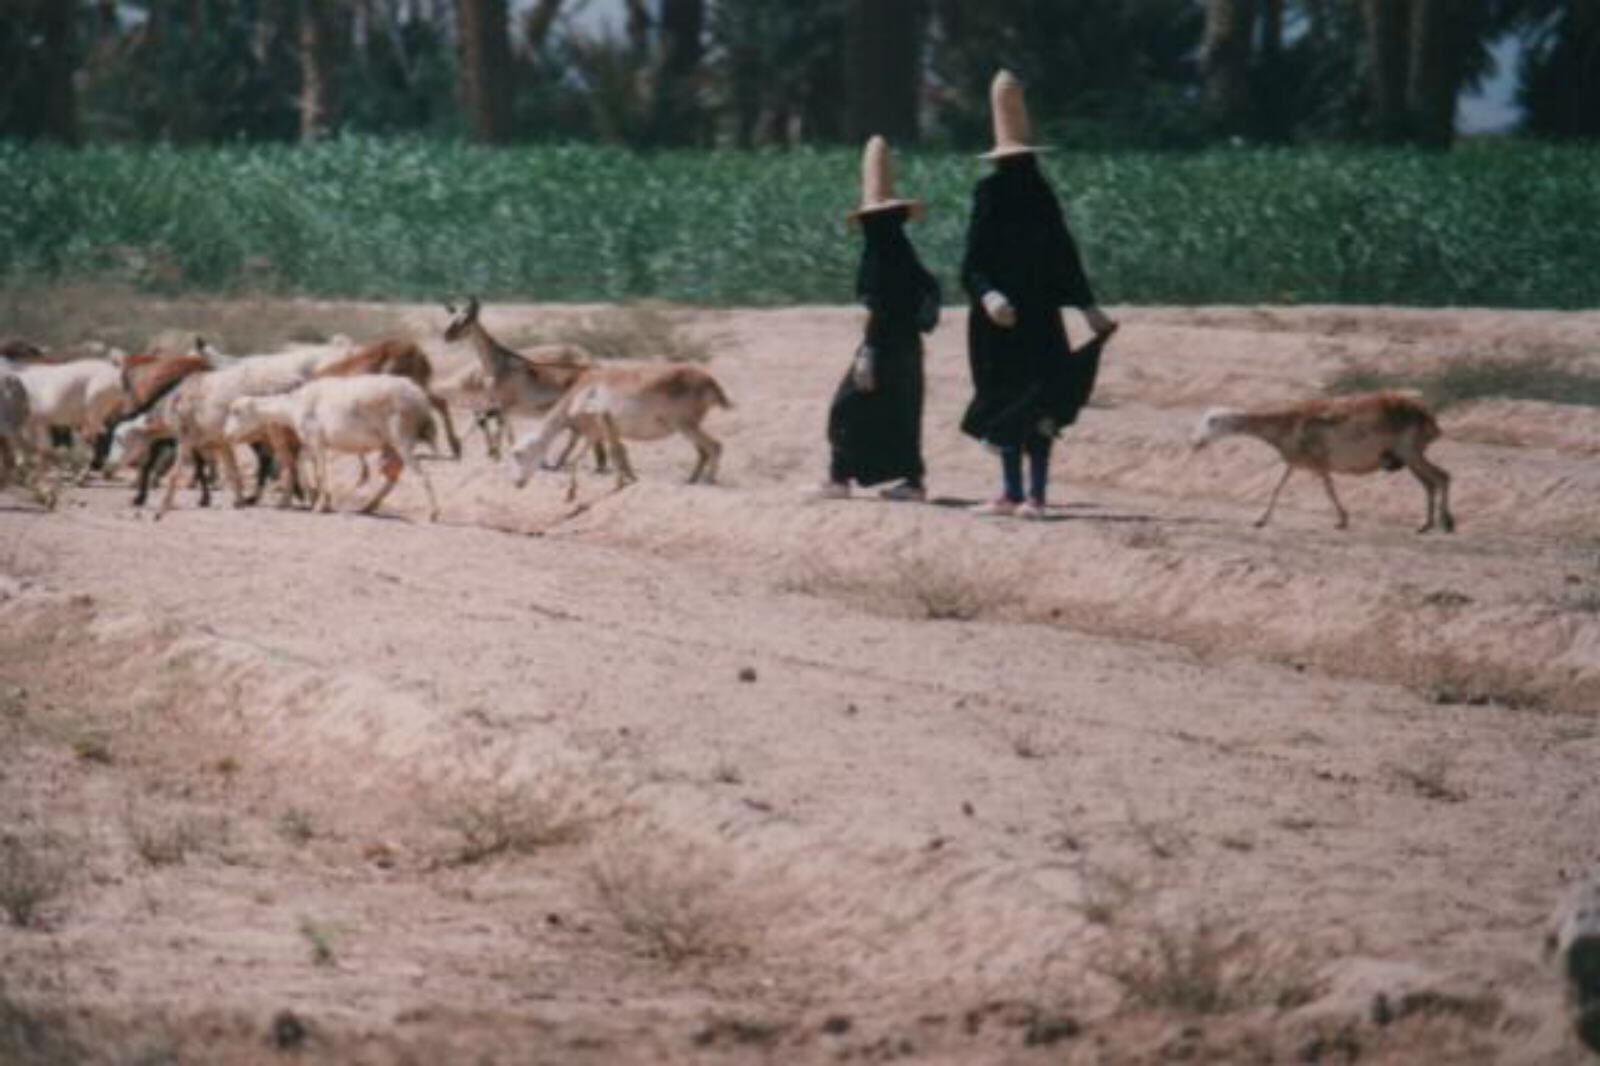 Women herding goats in Wadi Hadramout, Yemen